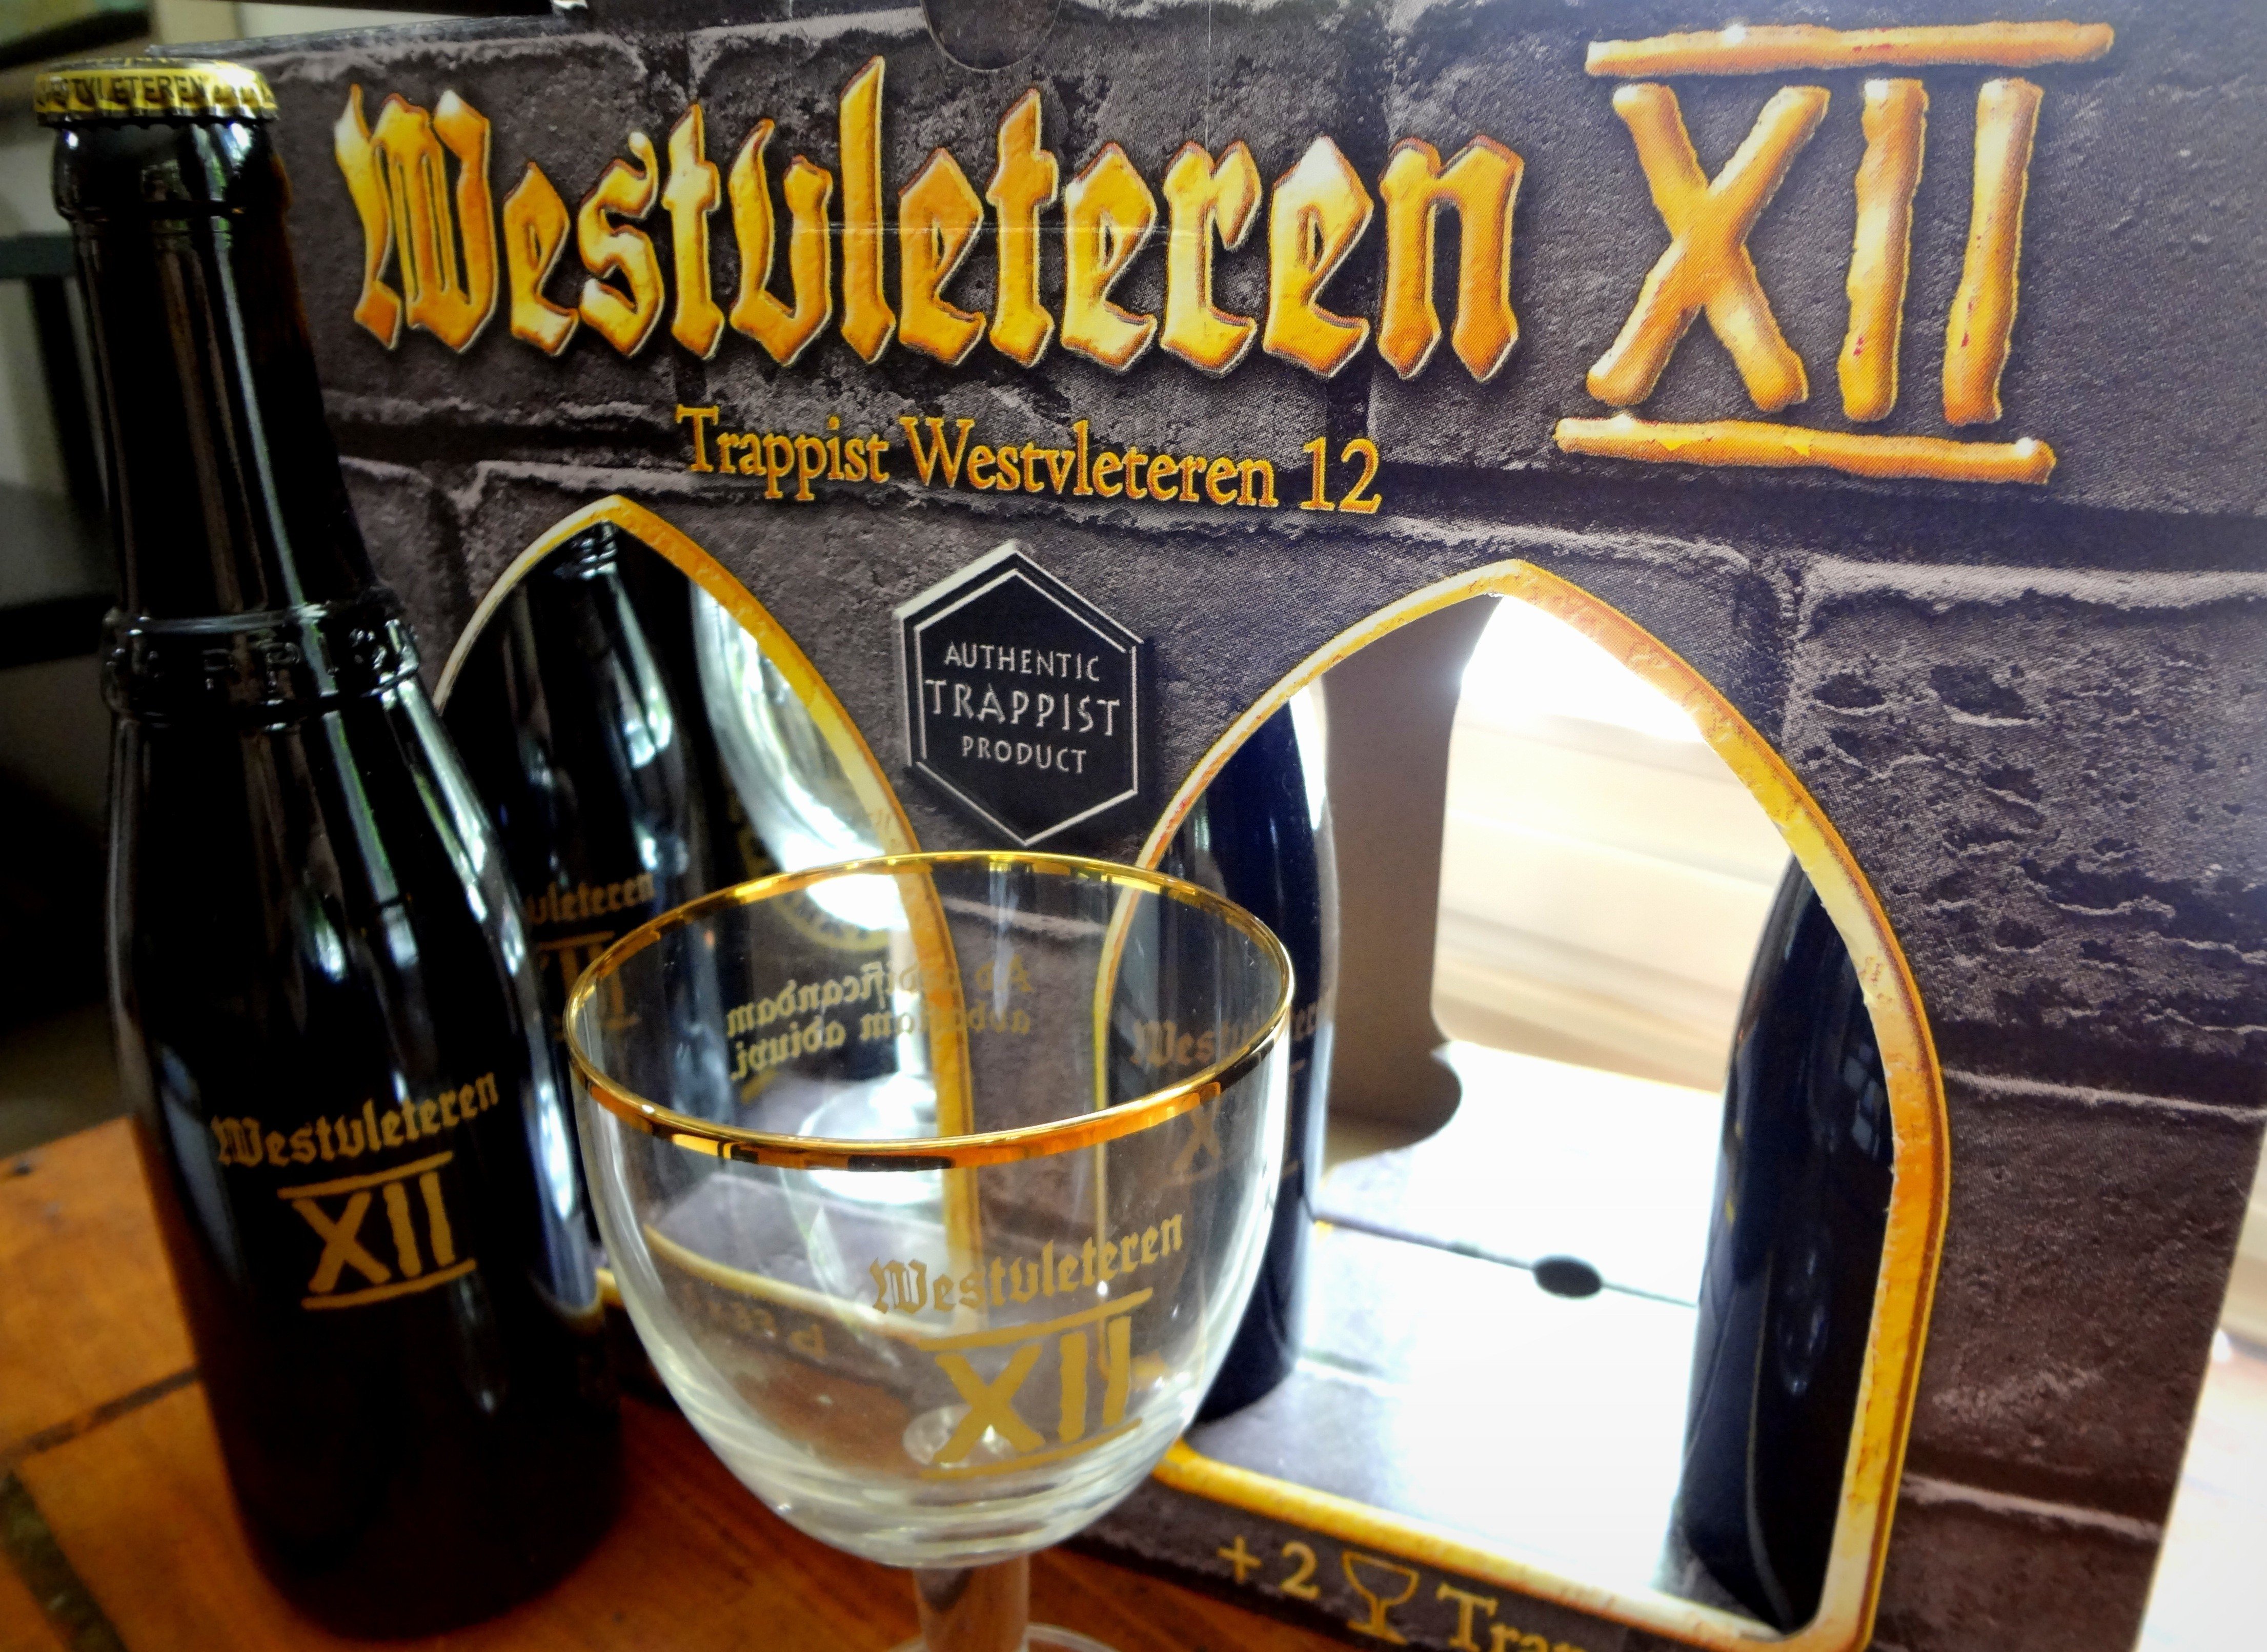 Westvleteren Abdij St. Sixtus Brauerei aus Belgien